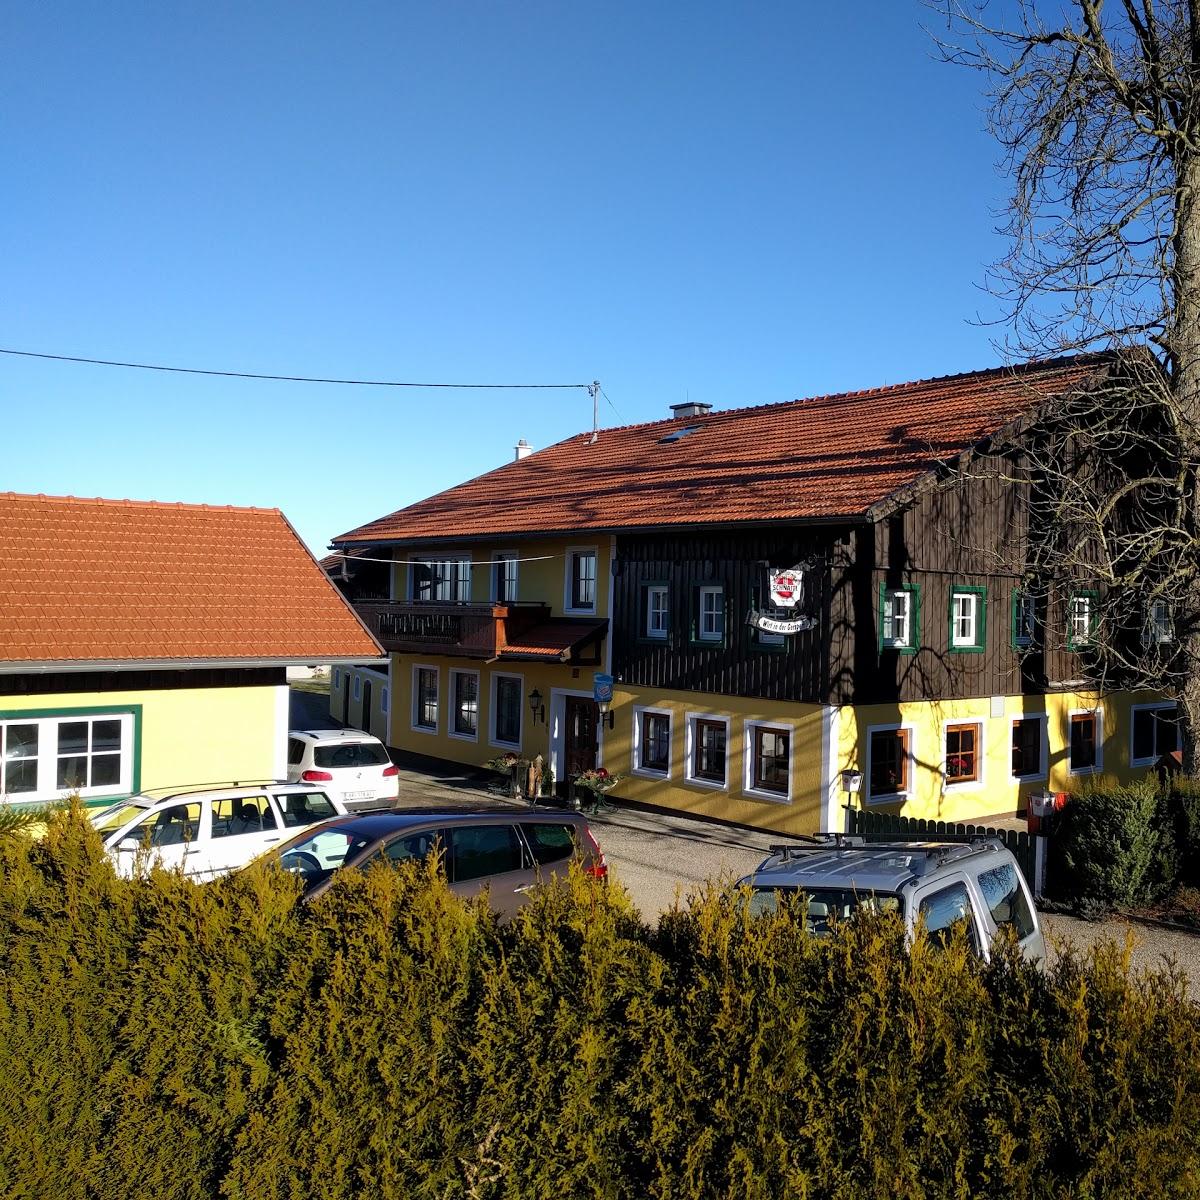 Restaurant "Gasthaus Wieland Wirt in der Gerspert" in Sankt Johann am Walde